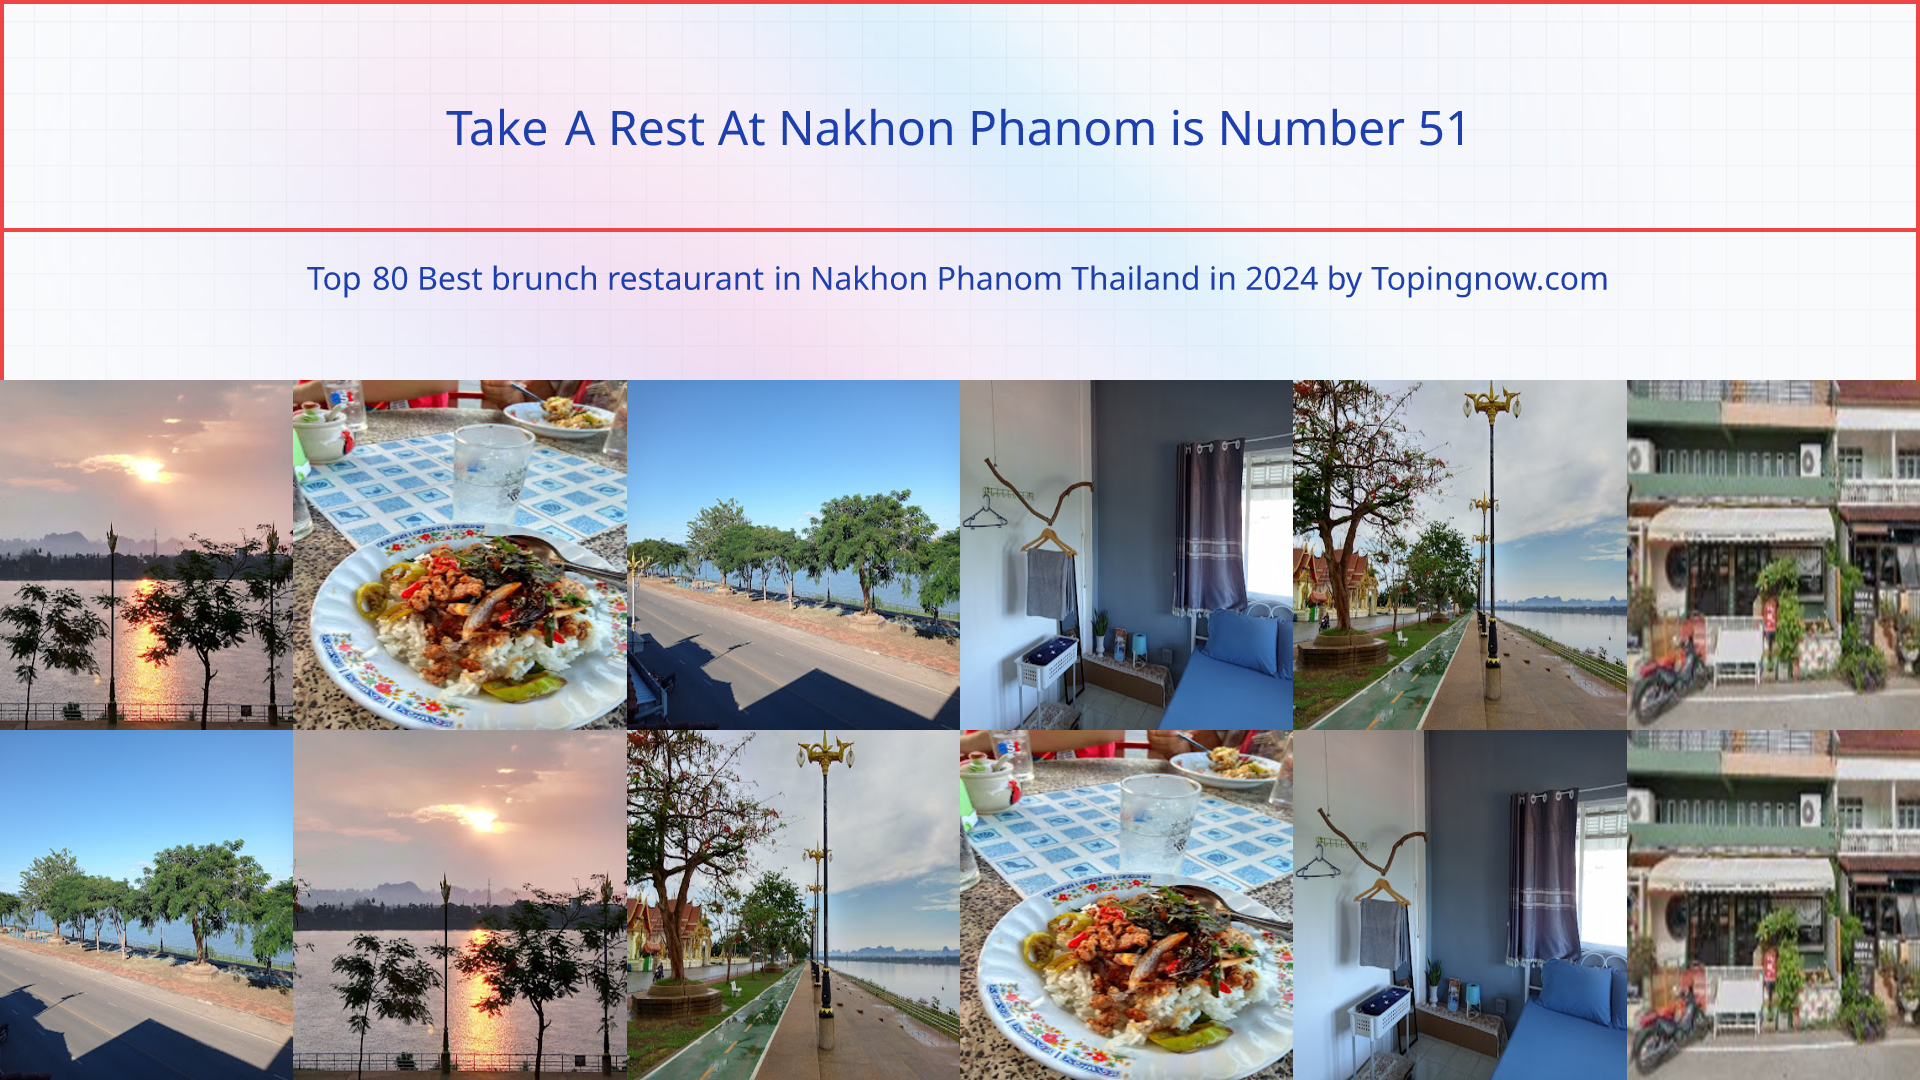 Take A Rest At Nakhon Phanom: Top 80 Best brunch restaurant in Nakhon Phanom Thailand in 2024